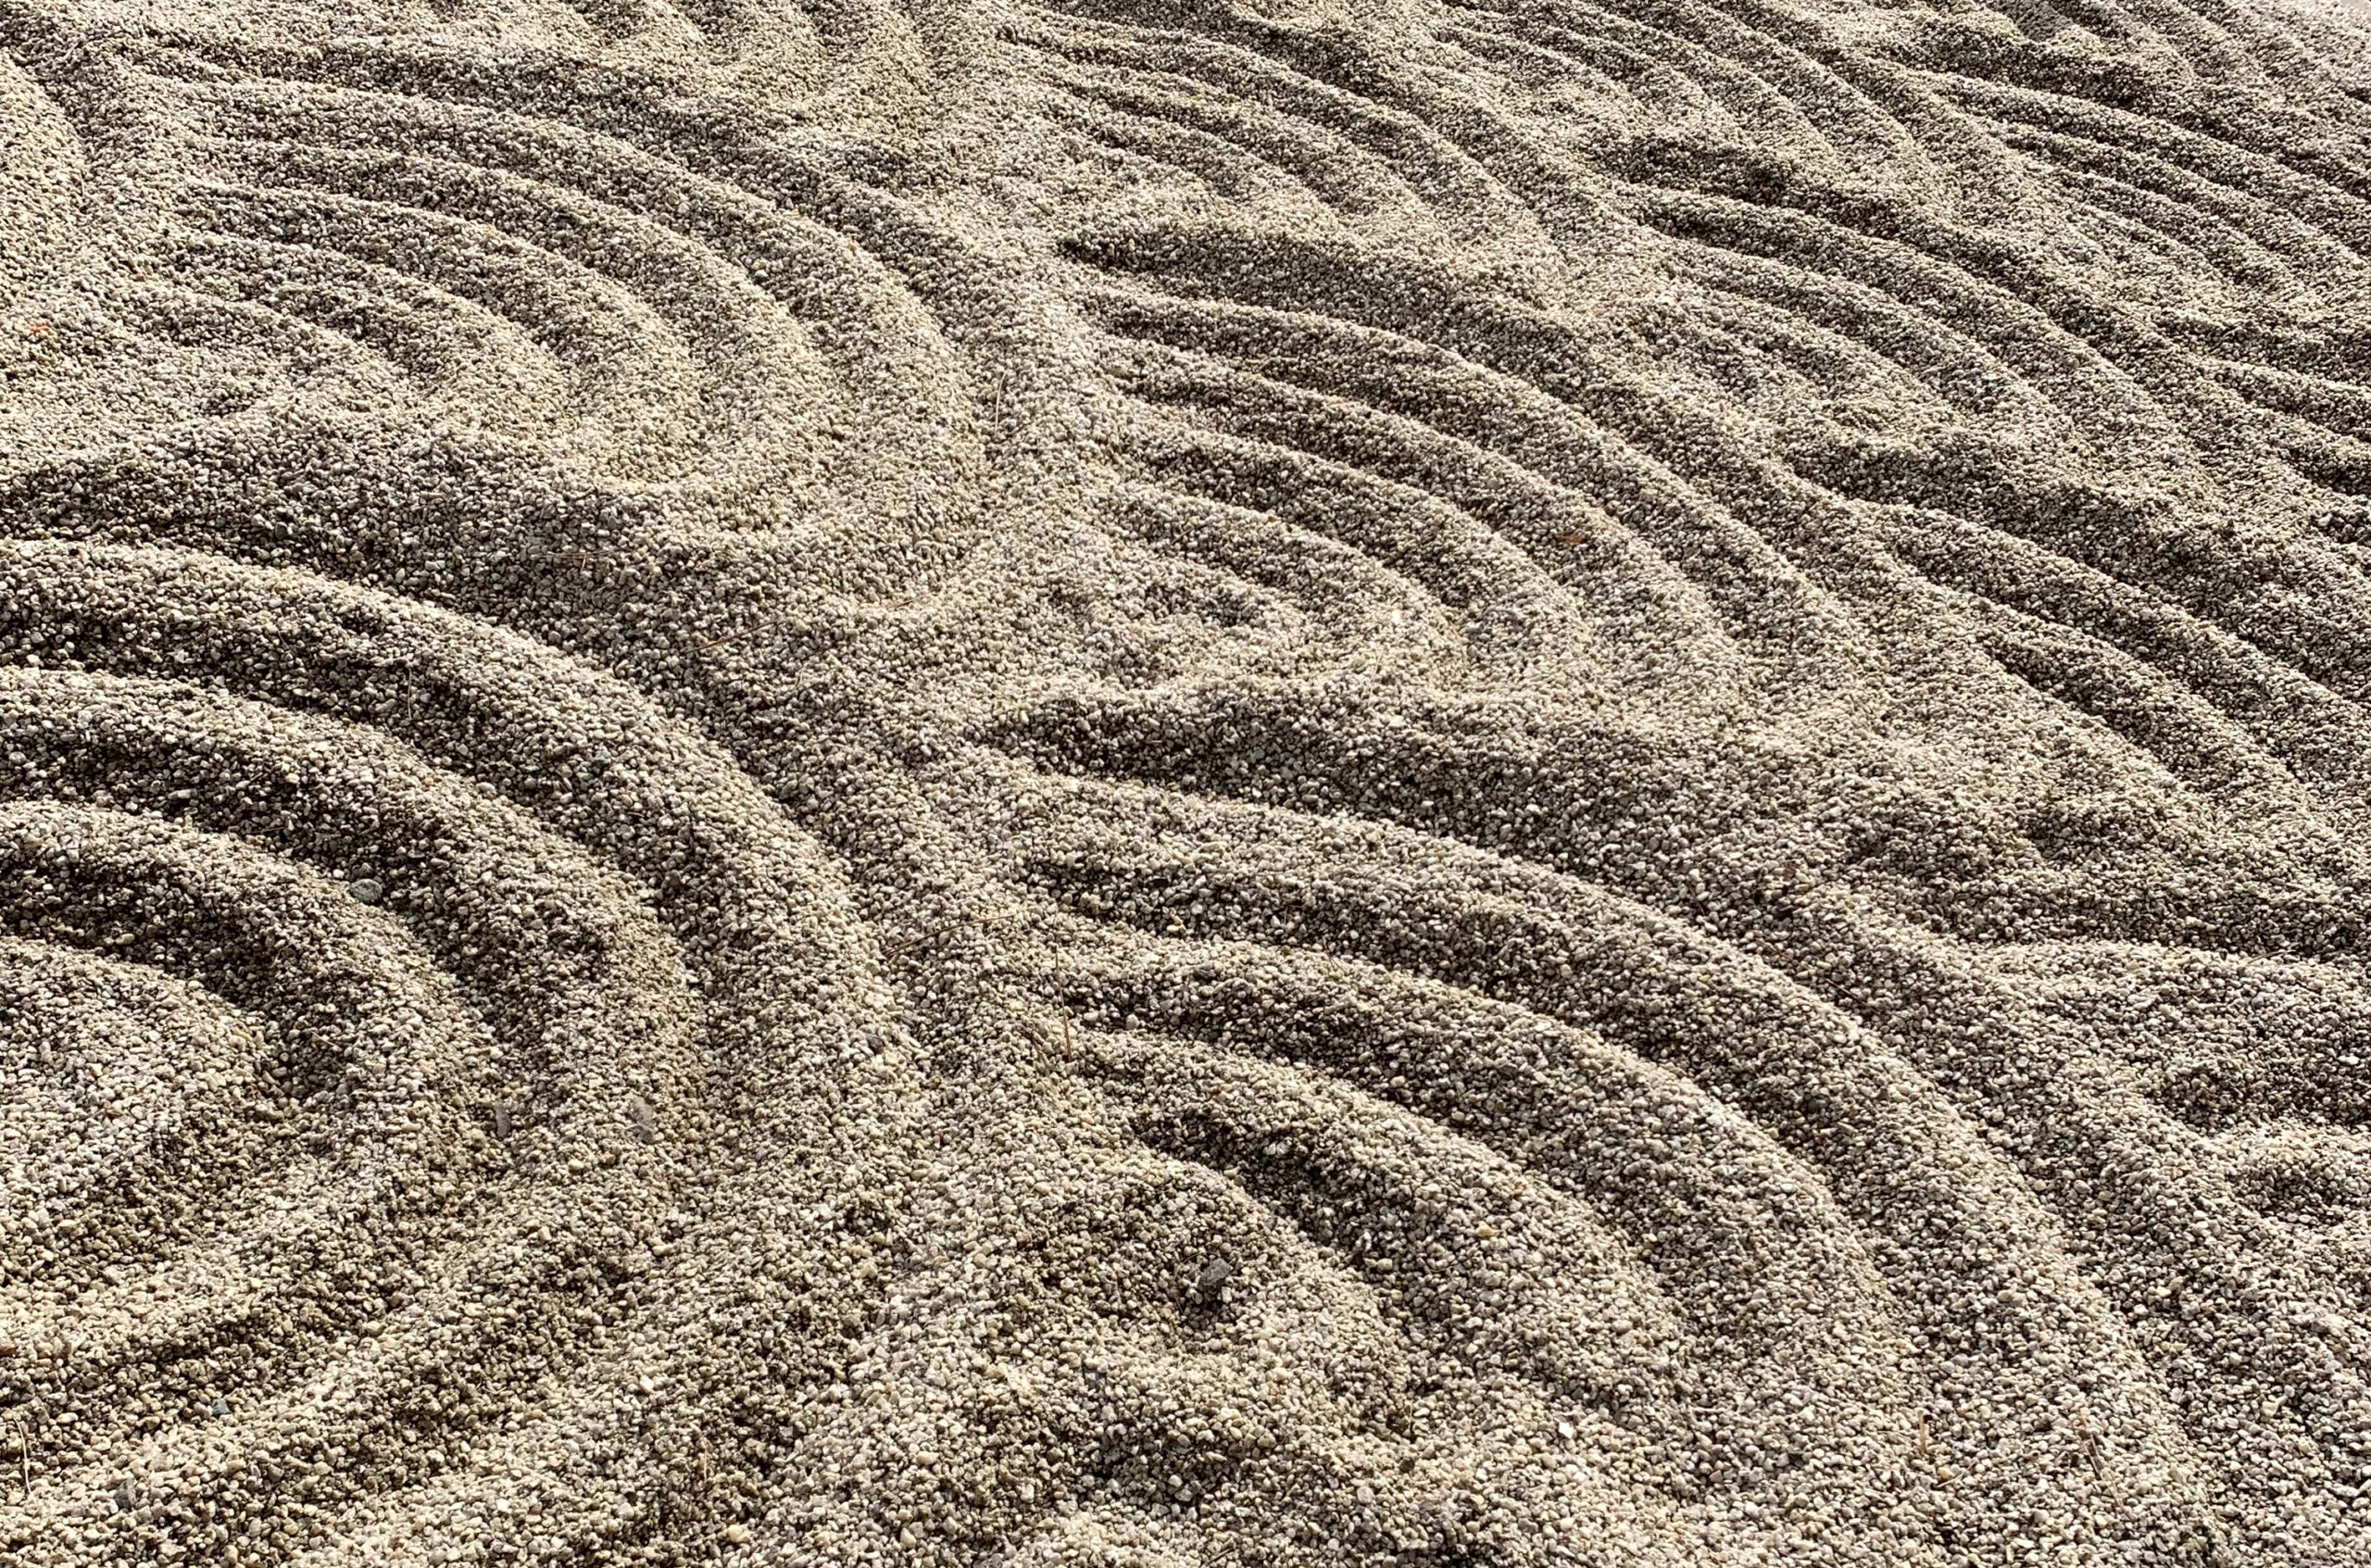 wave crest pattern